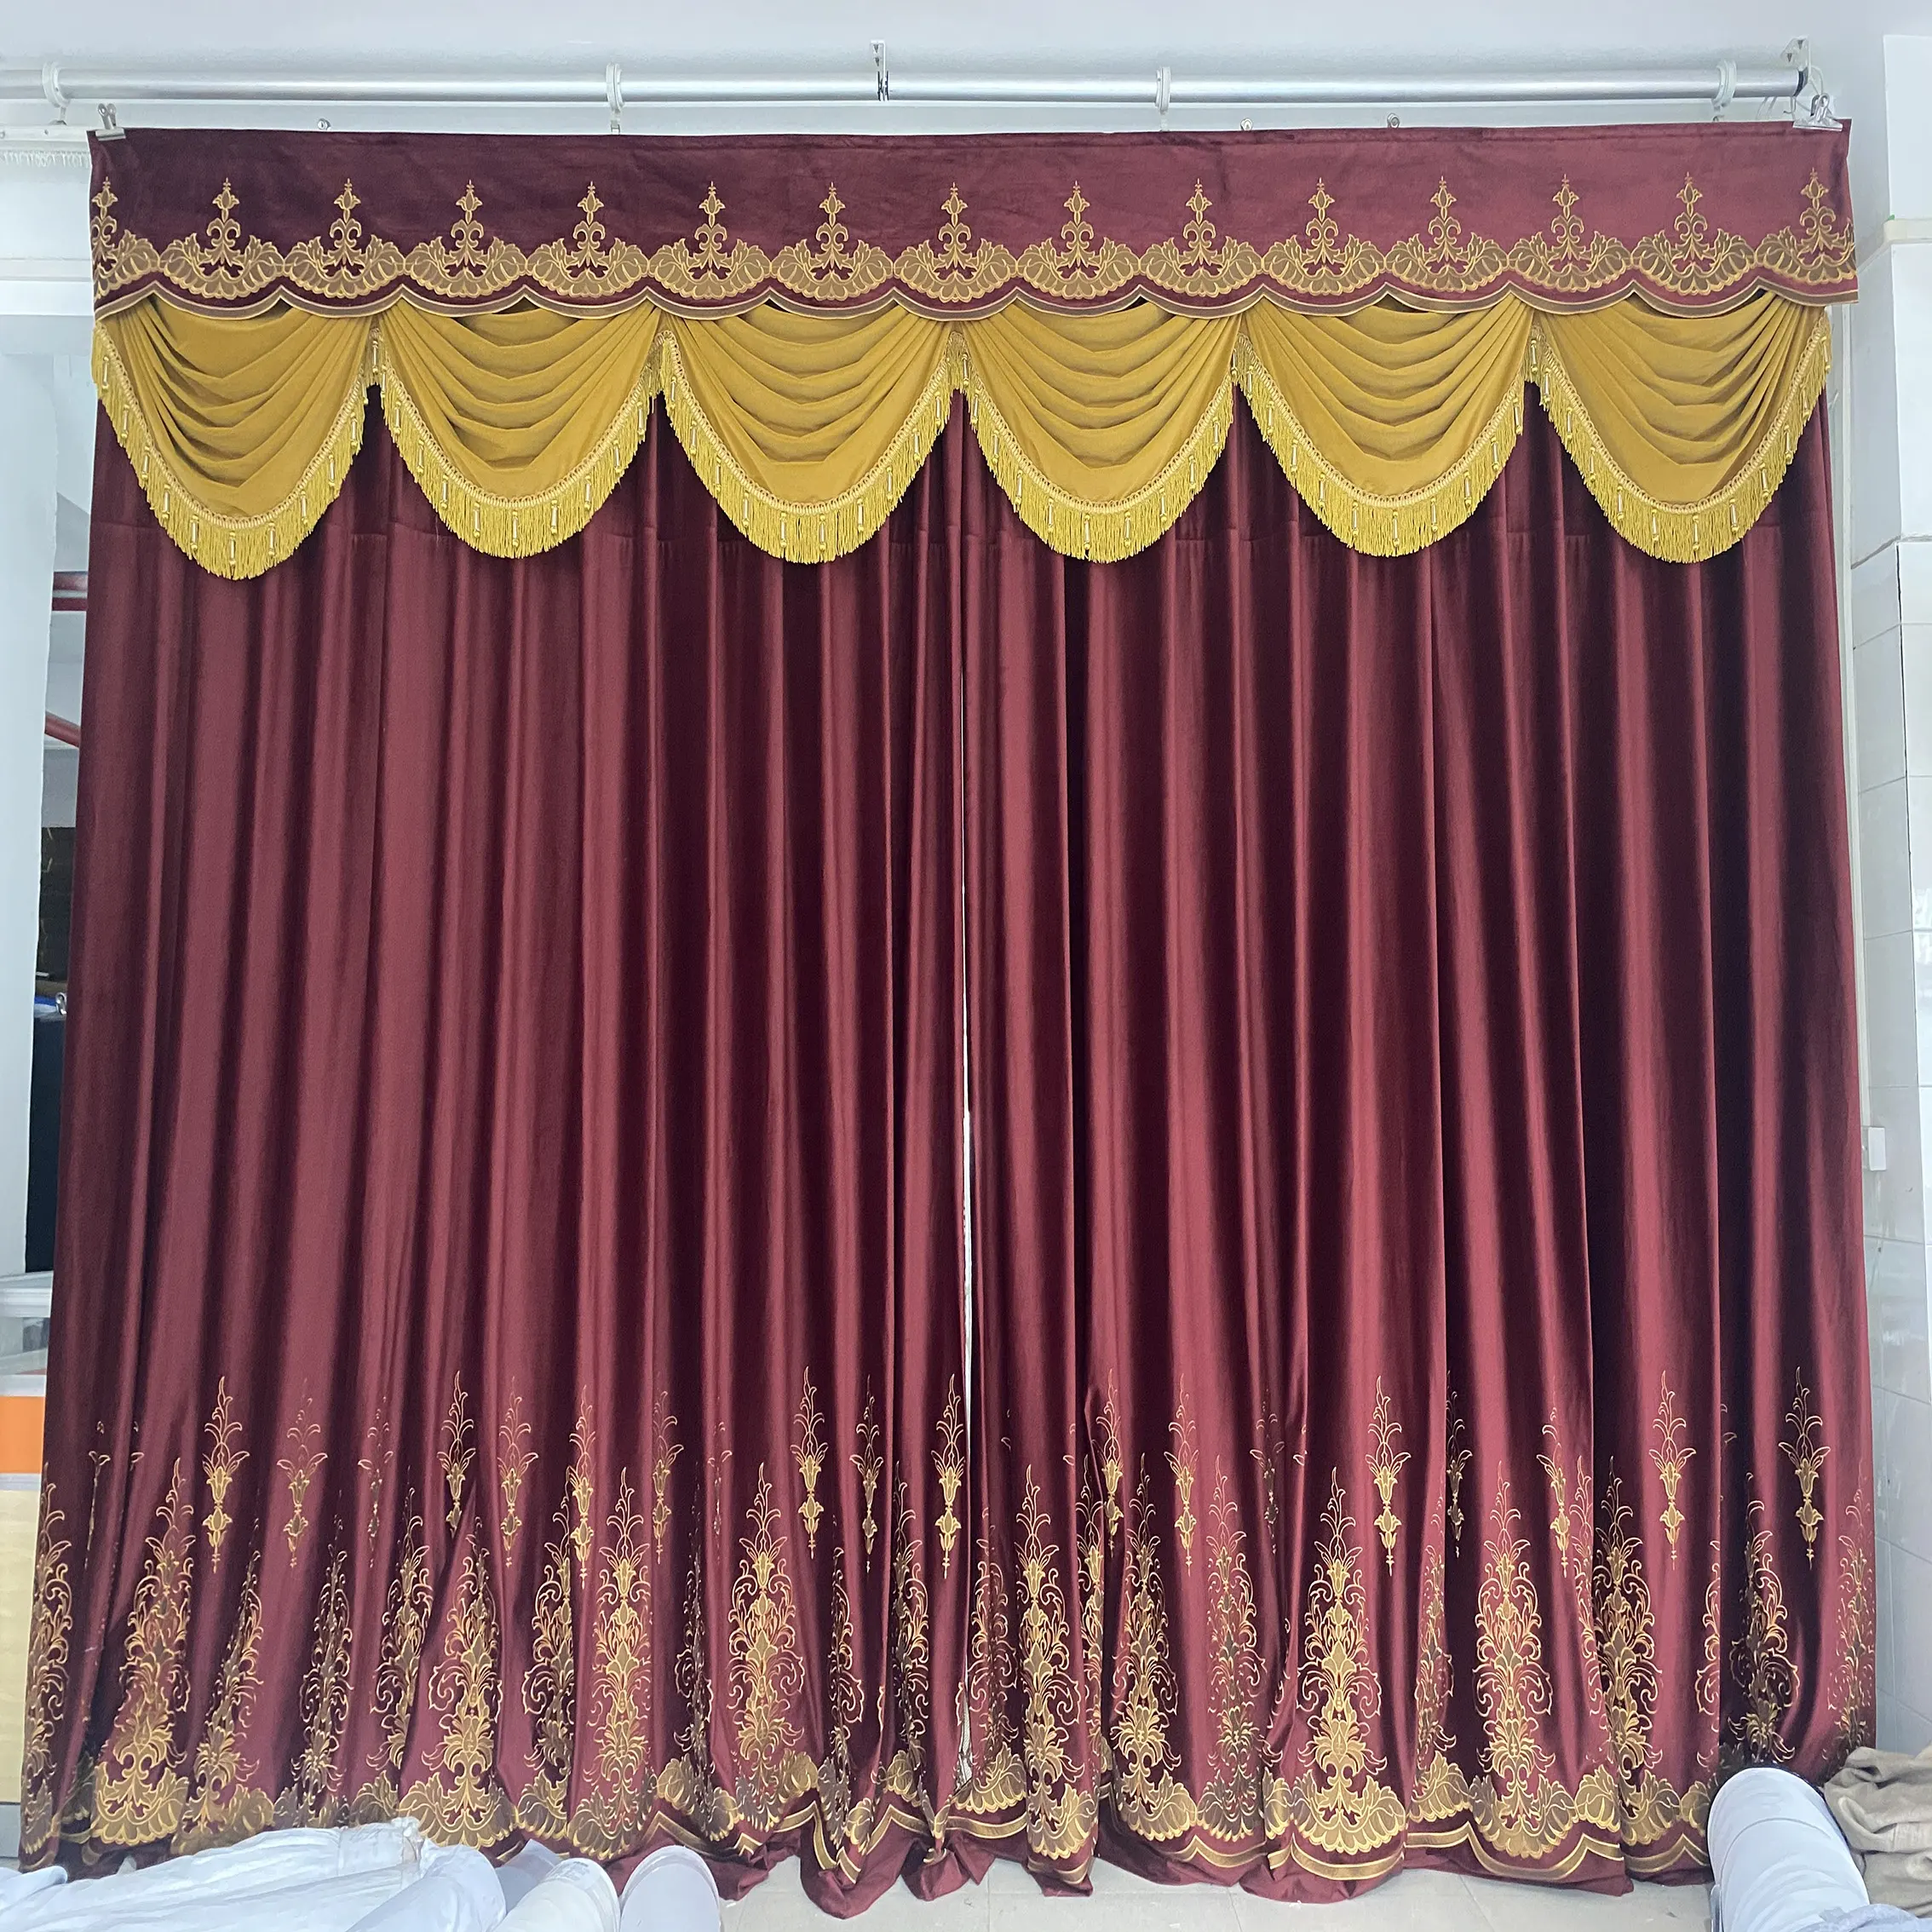 Cortinas de lujo rojas con cenefa para sala de estar, bonitas cortinas jacquard de doble capa